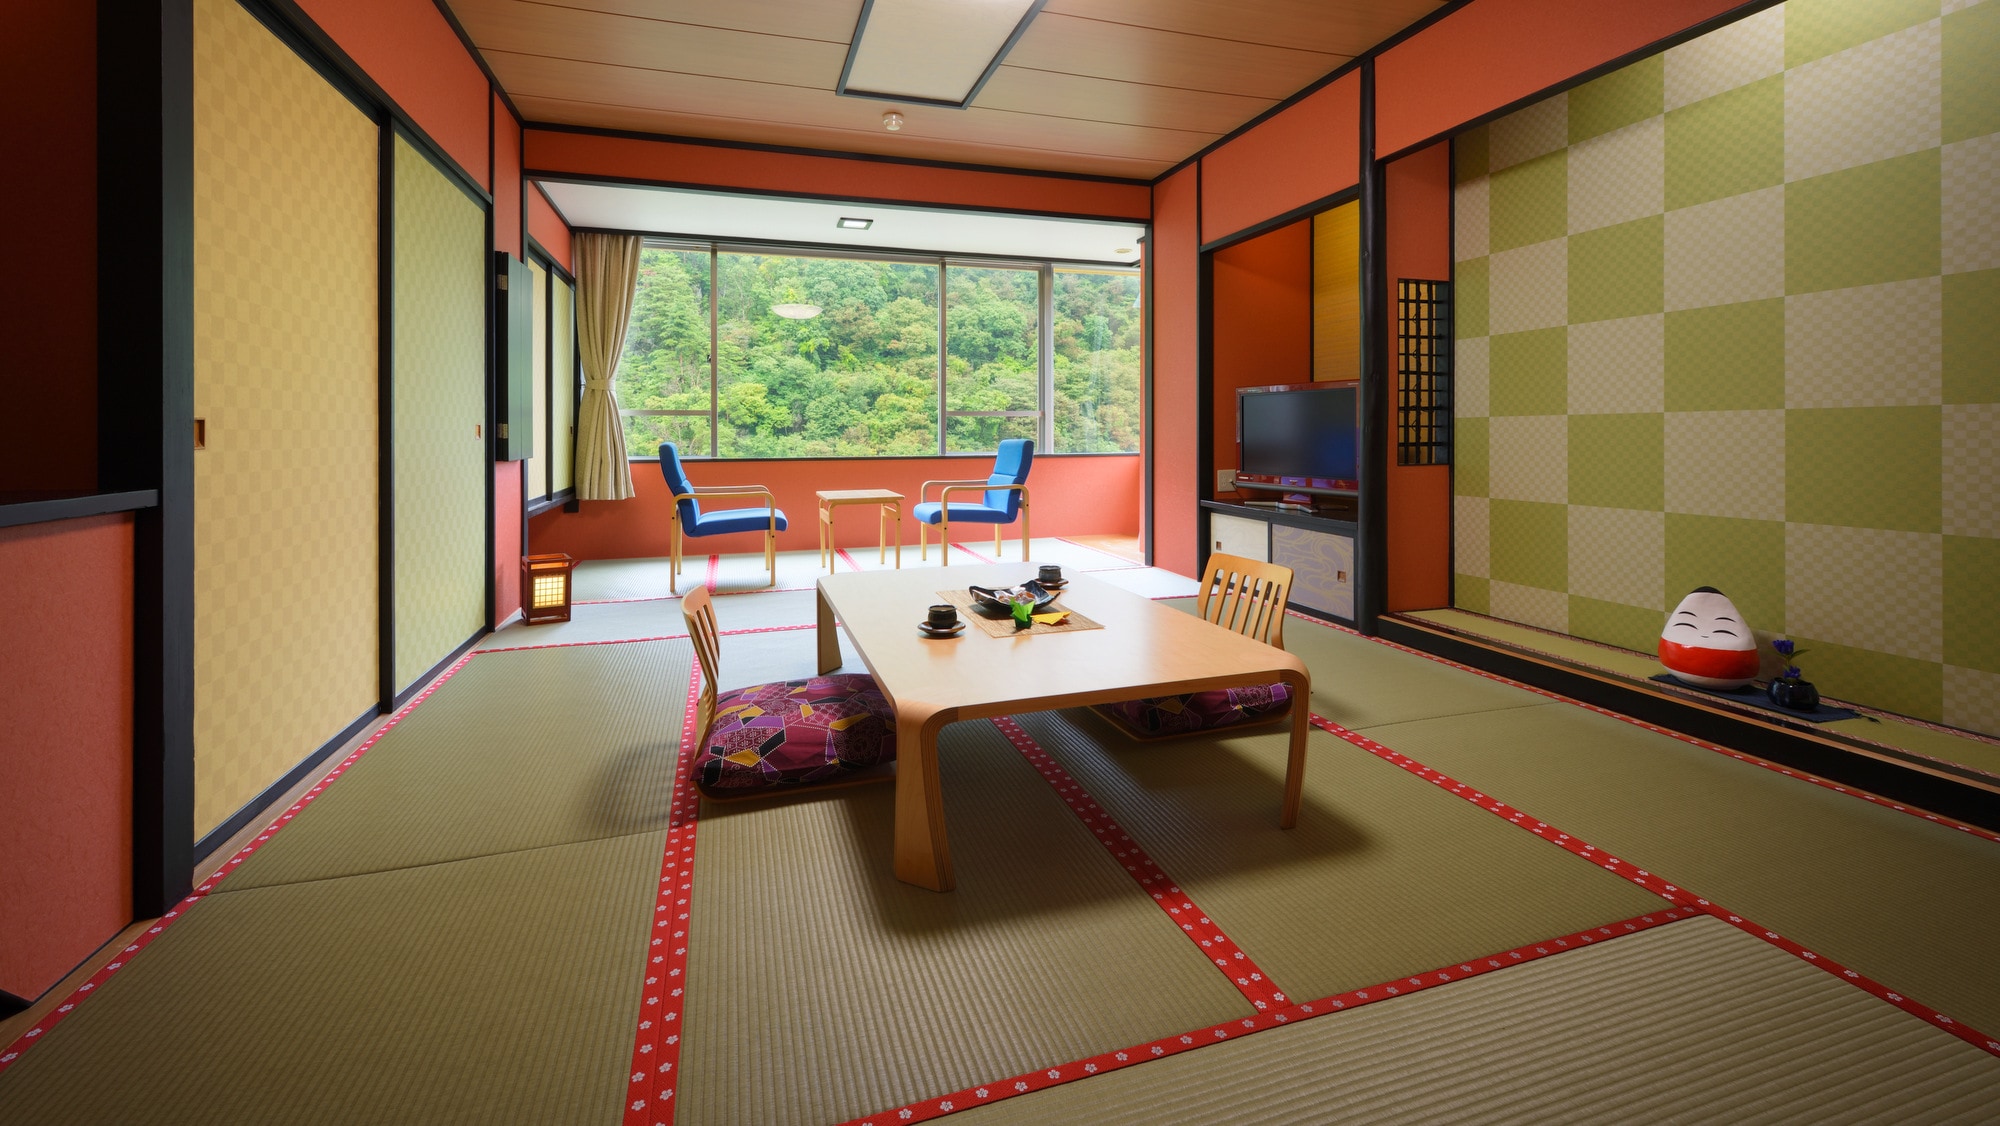 [ตัวอย่างห้องพัก] ห้องสไตล์ญี่ปุ่นด้านหุบเขามี 10 เสื่อทาทามิ กรุณาเพลิดเพลินไปกับฤดูกาลที่เปลี่ยนไปจากห้องของคุณ